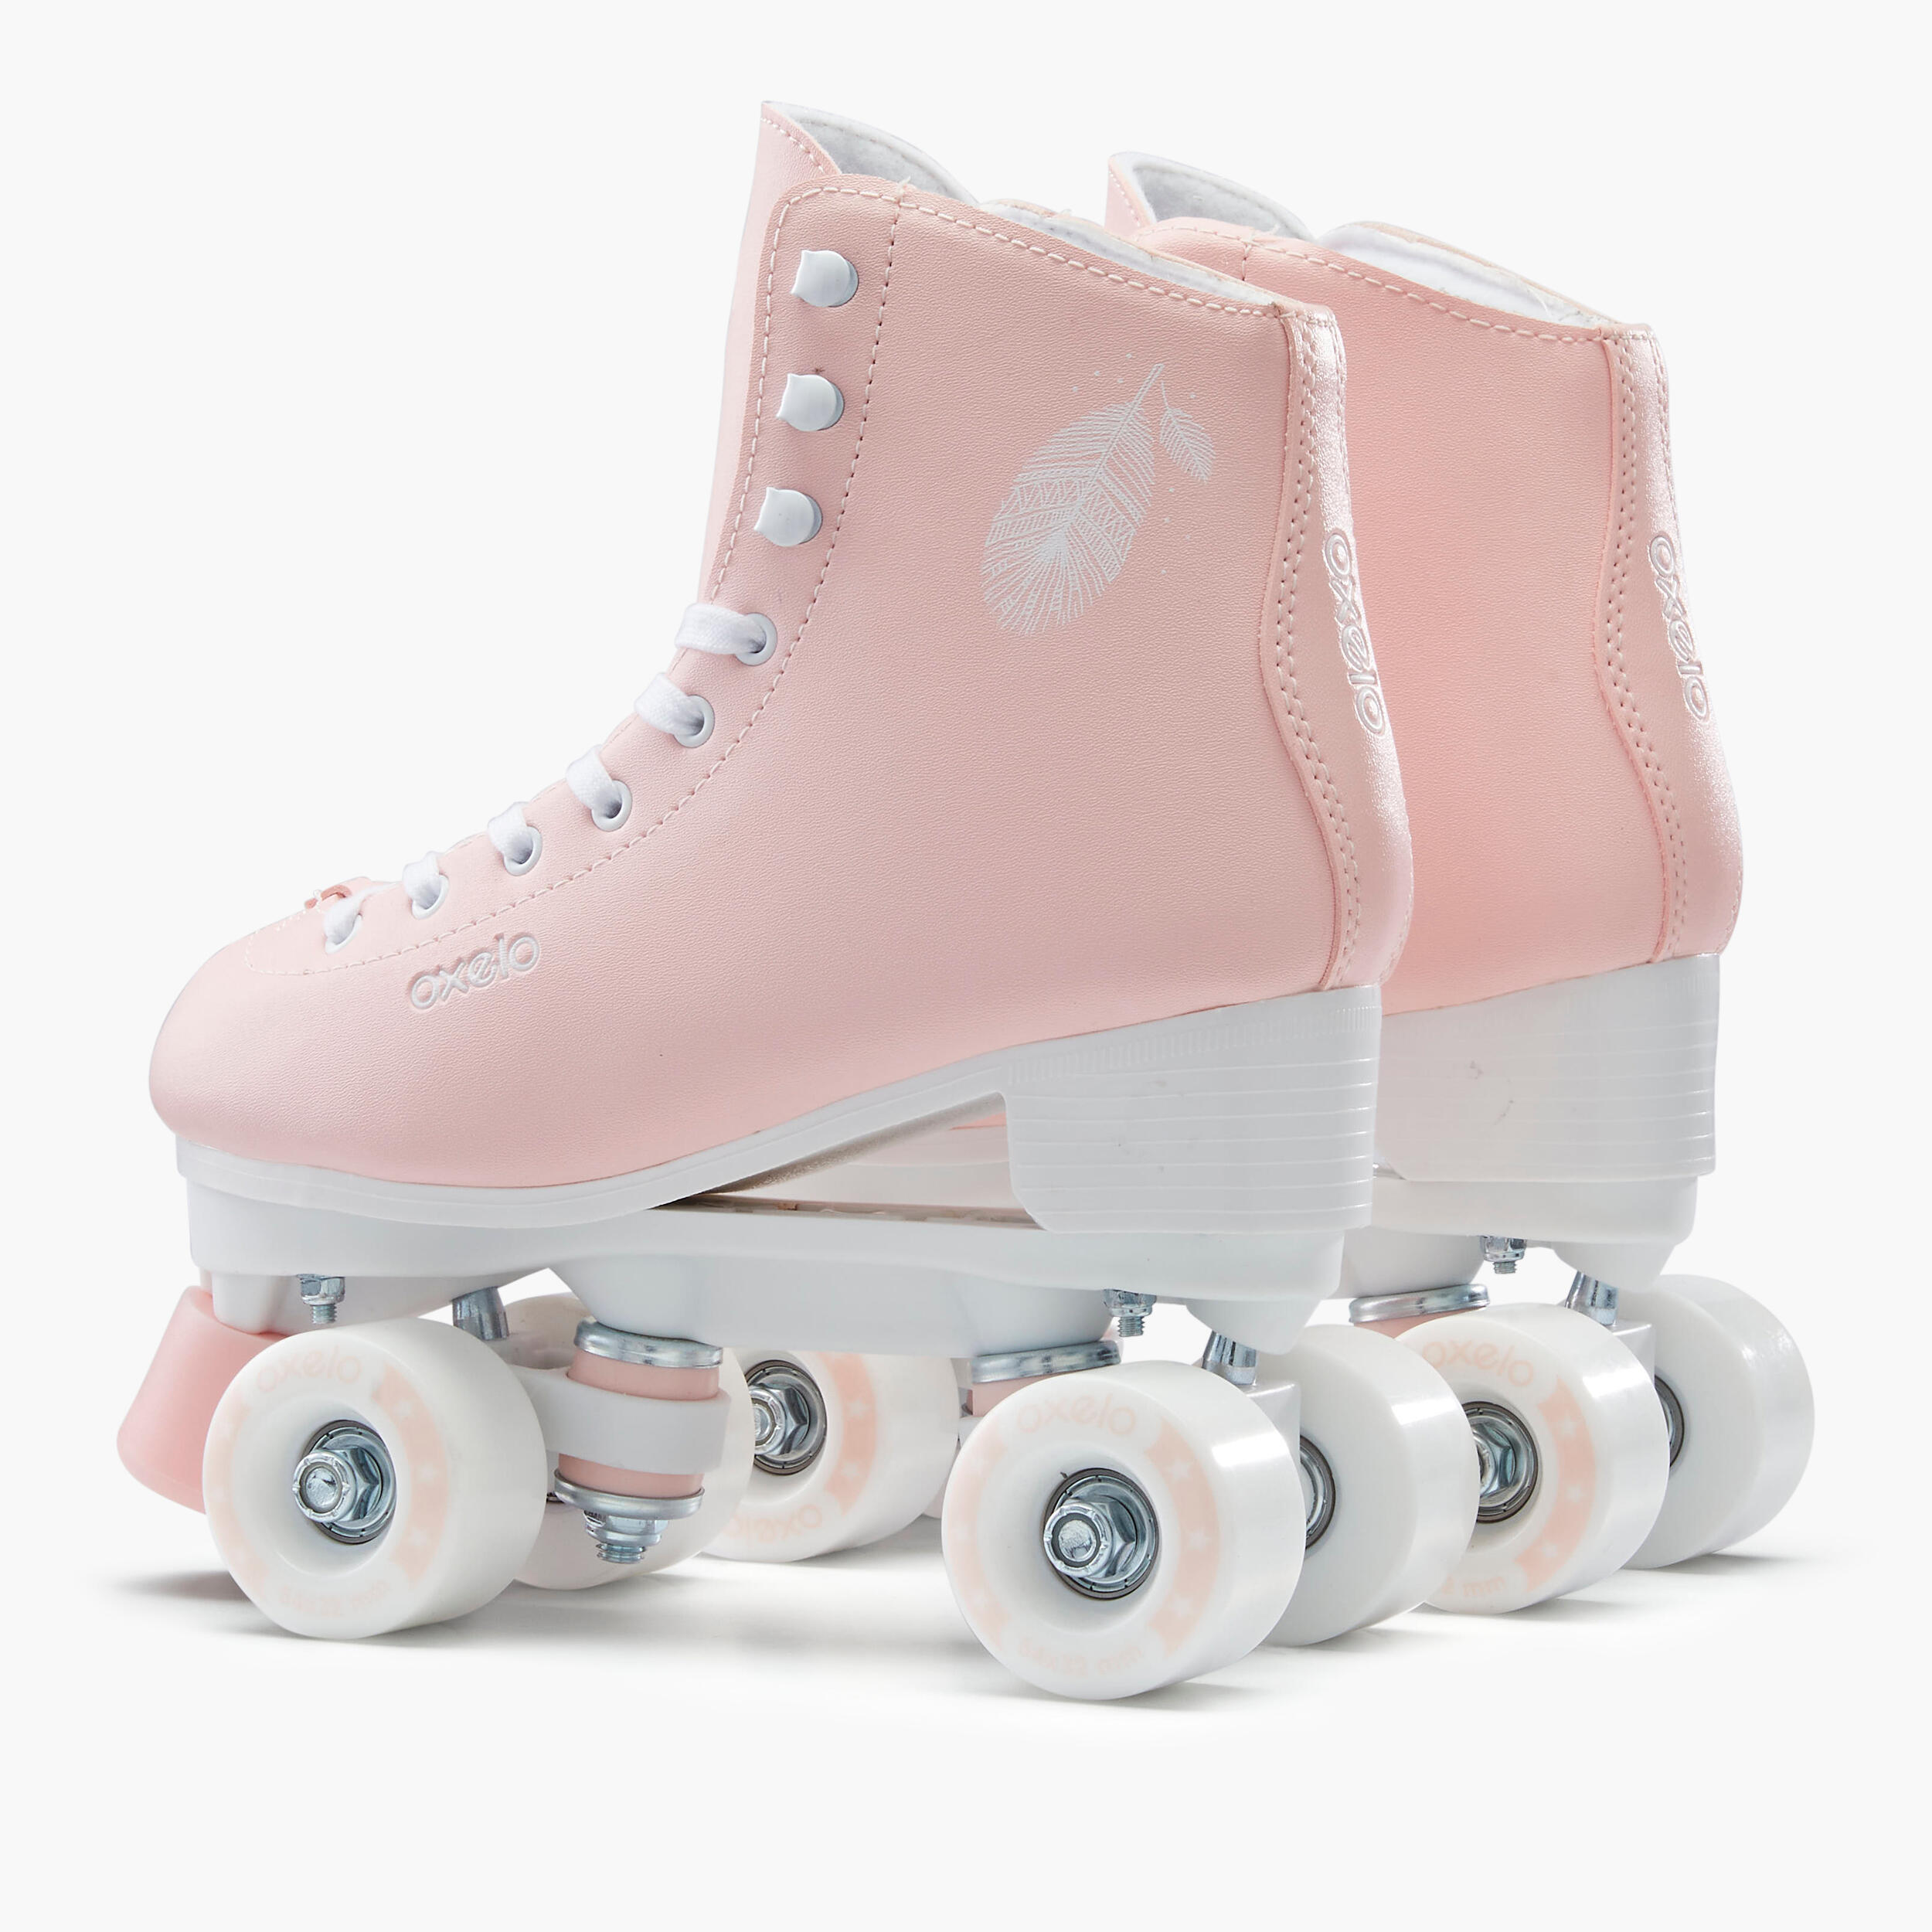 Kids' and Adult Artistic Roller Skating Quad Skates 100 - Pink 7/15